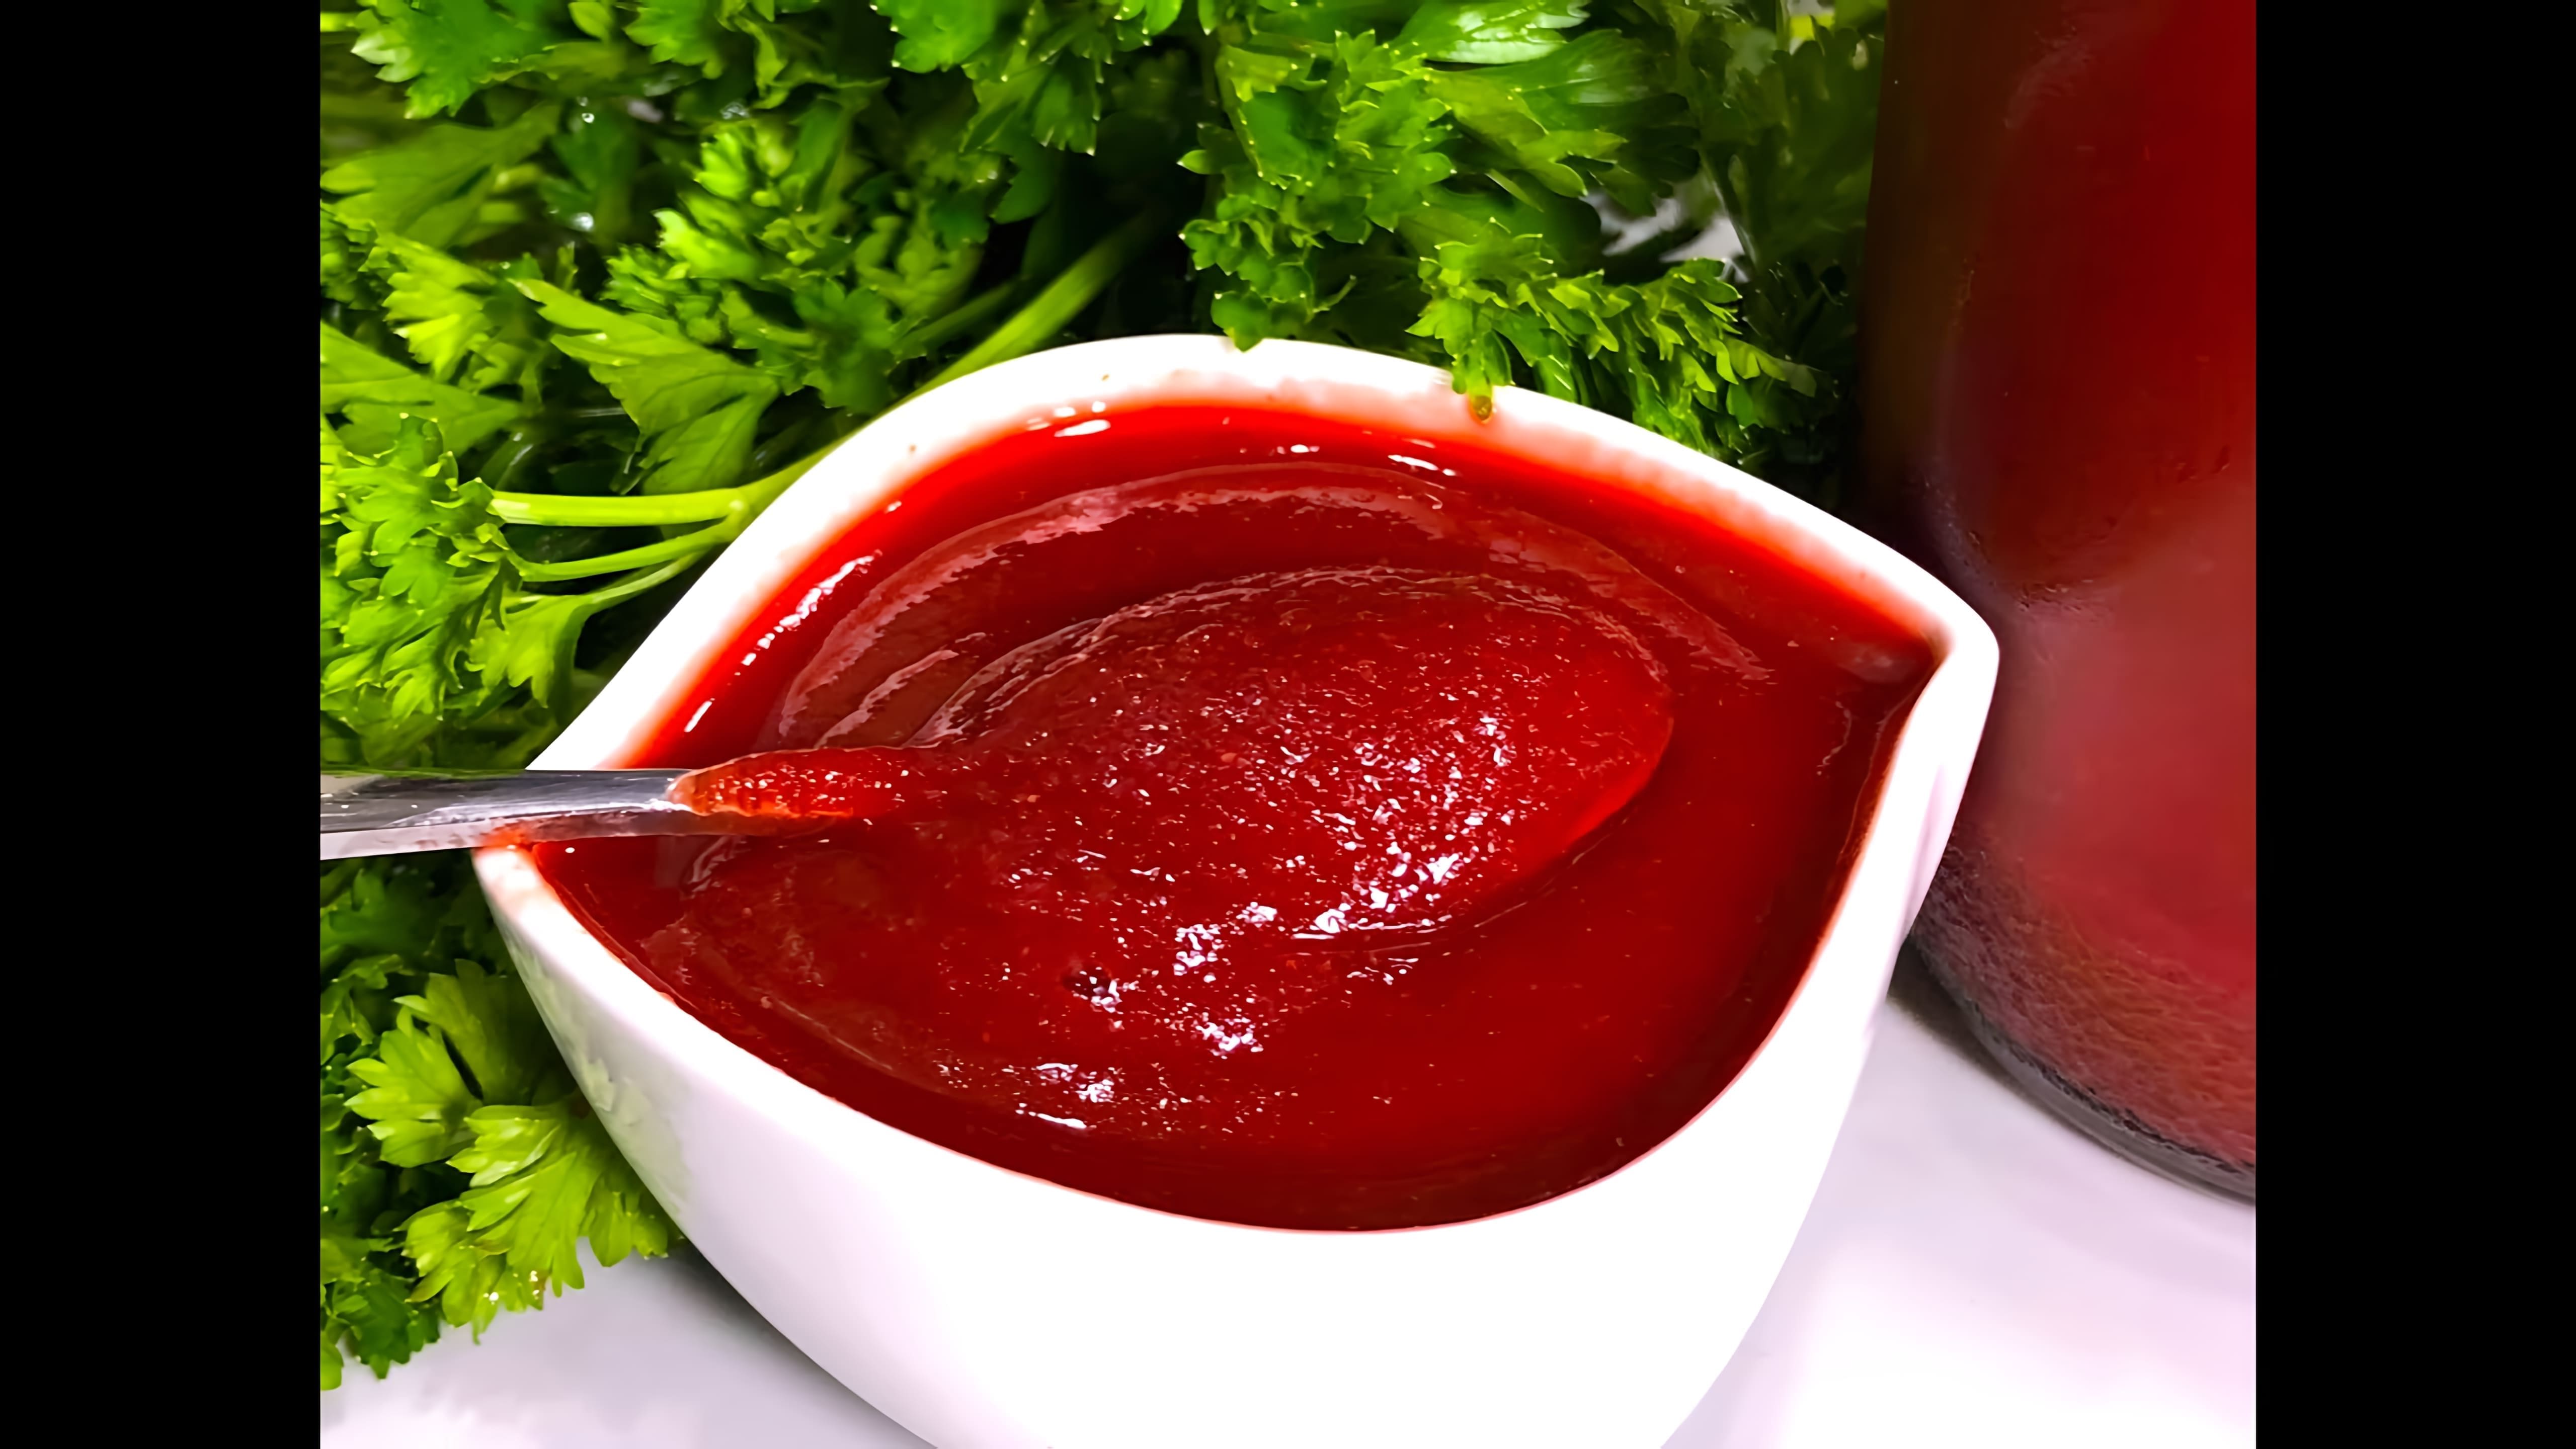 В этом видео демонстрируется процесс приготовления кетчупа на зиму по старинному рецепту американских хозяюшек